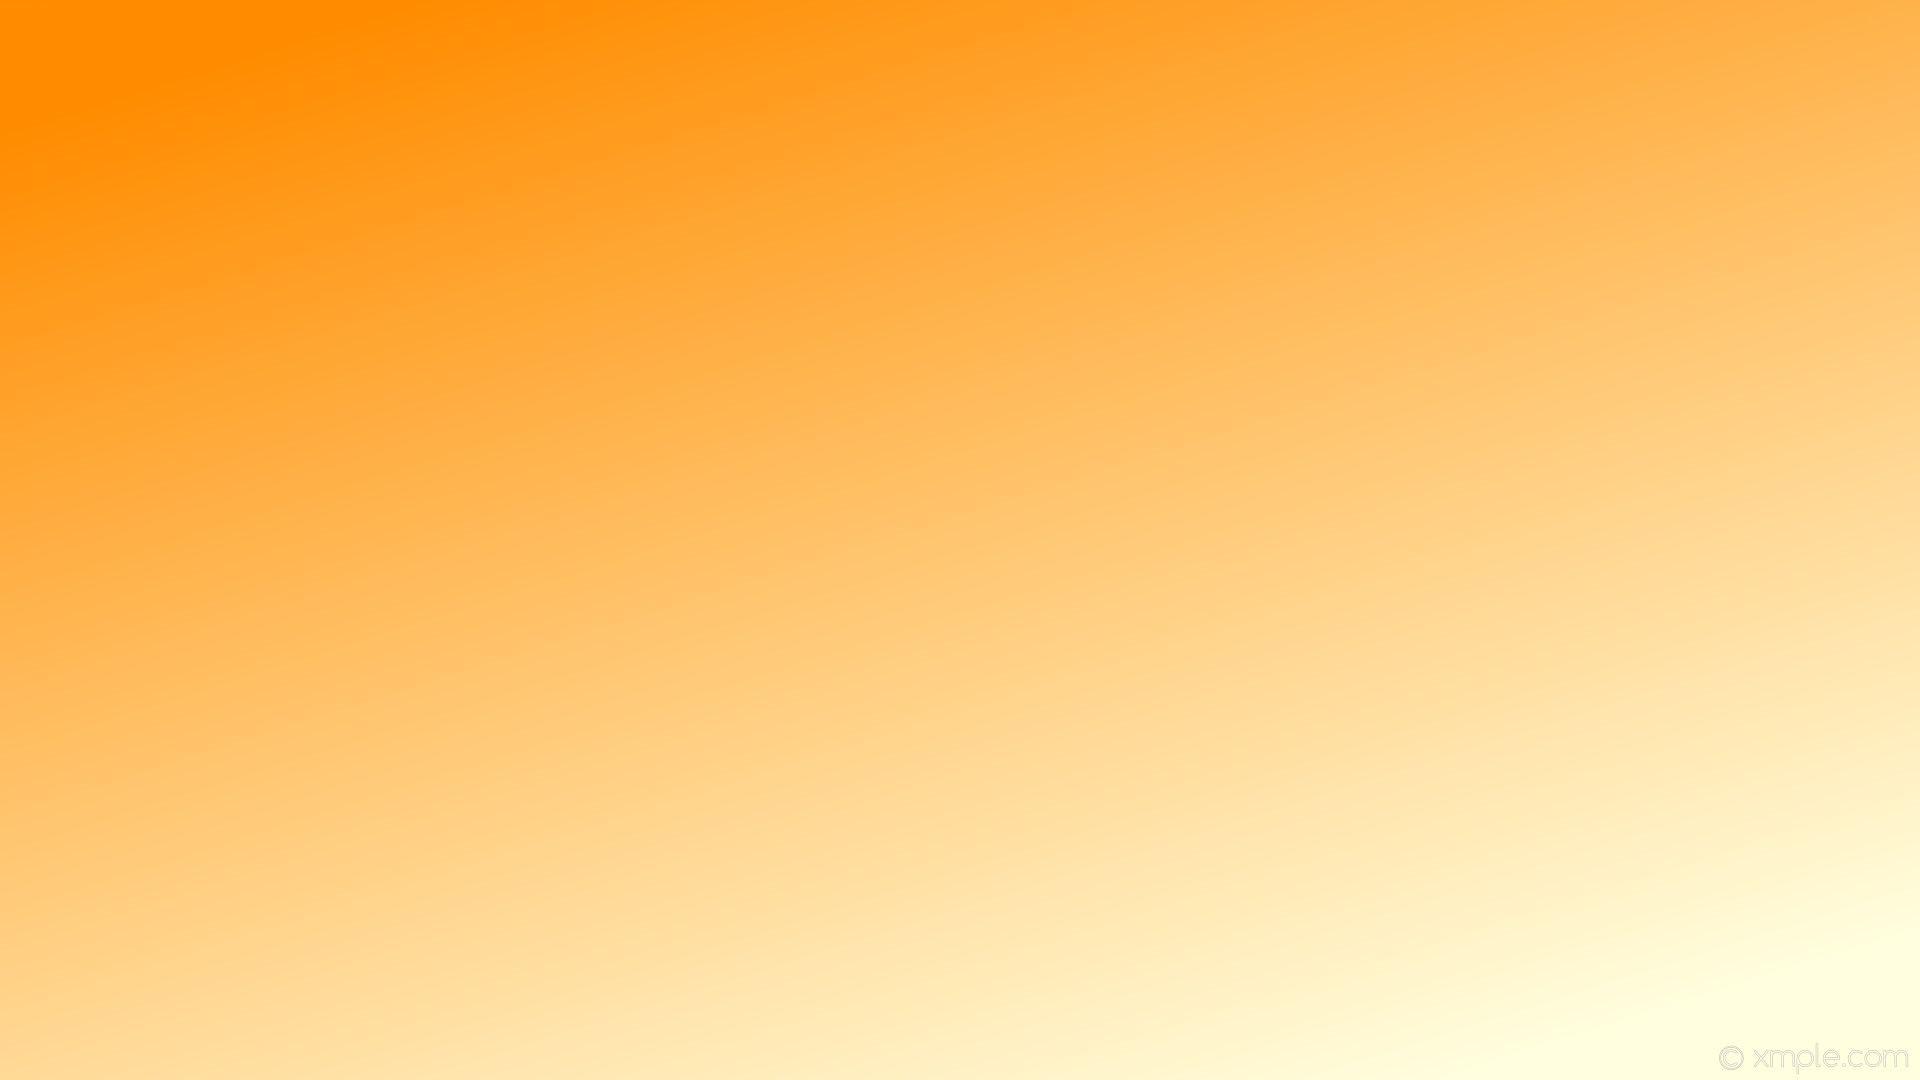  Pastel  Orange  Wallpapers Top Free Pastel  Orange  